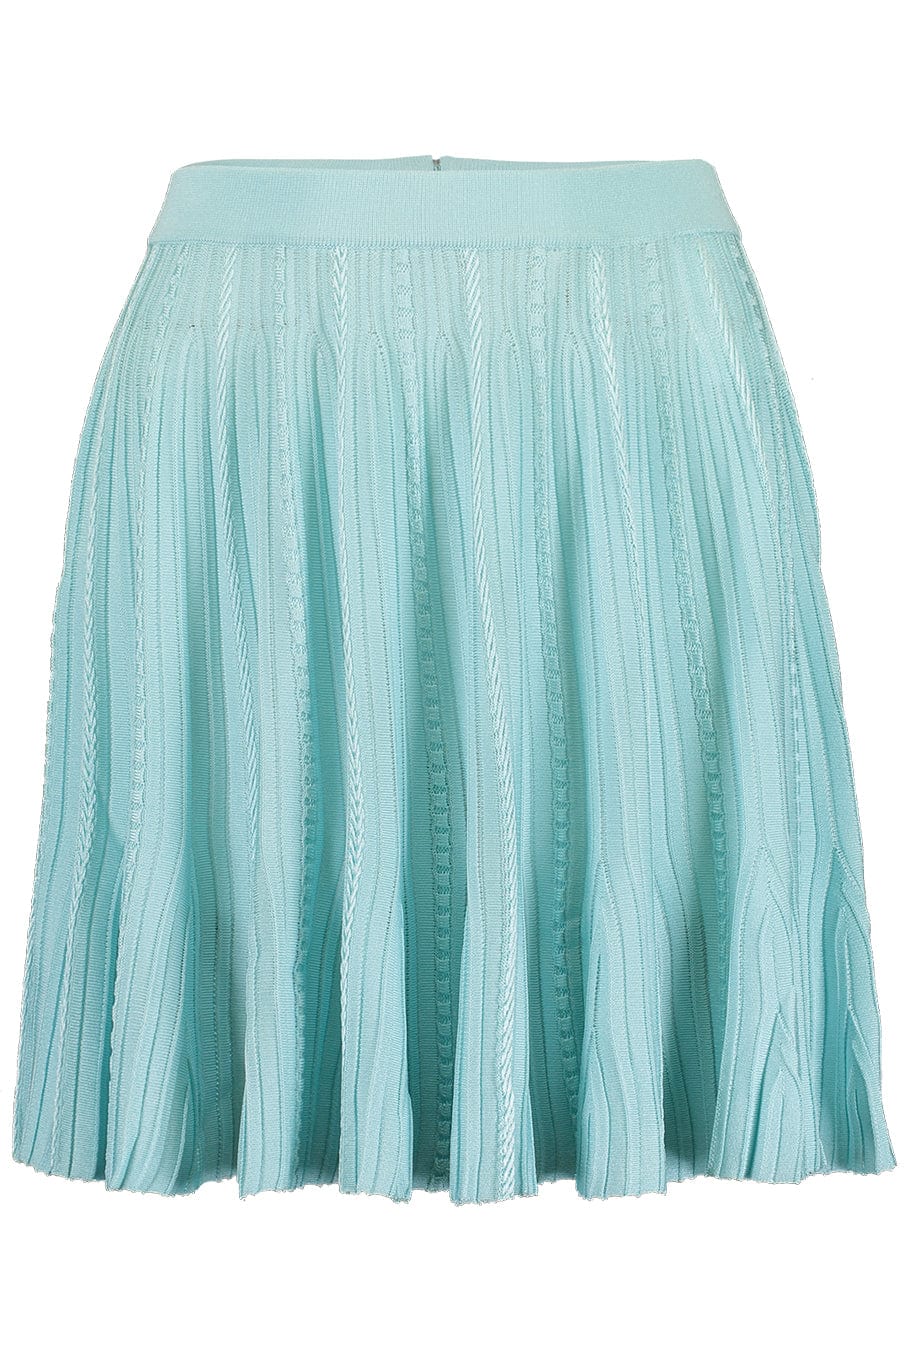 Frills Skirt – Marissa Collections